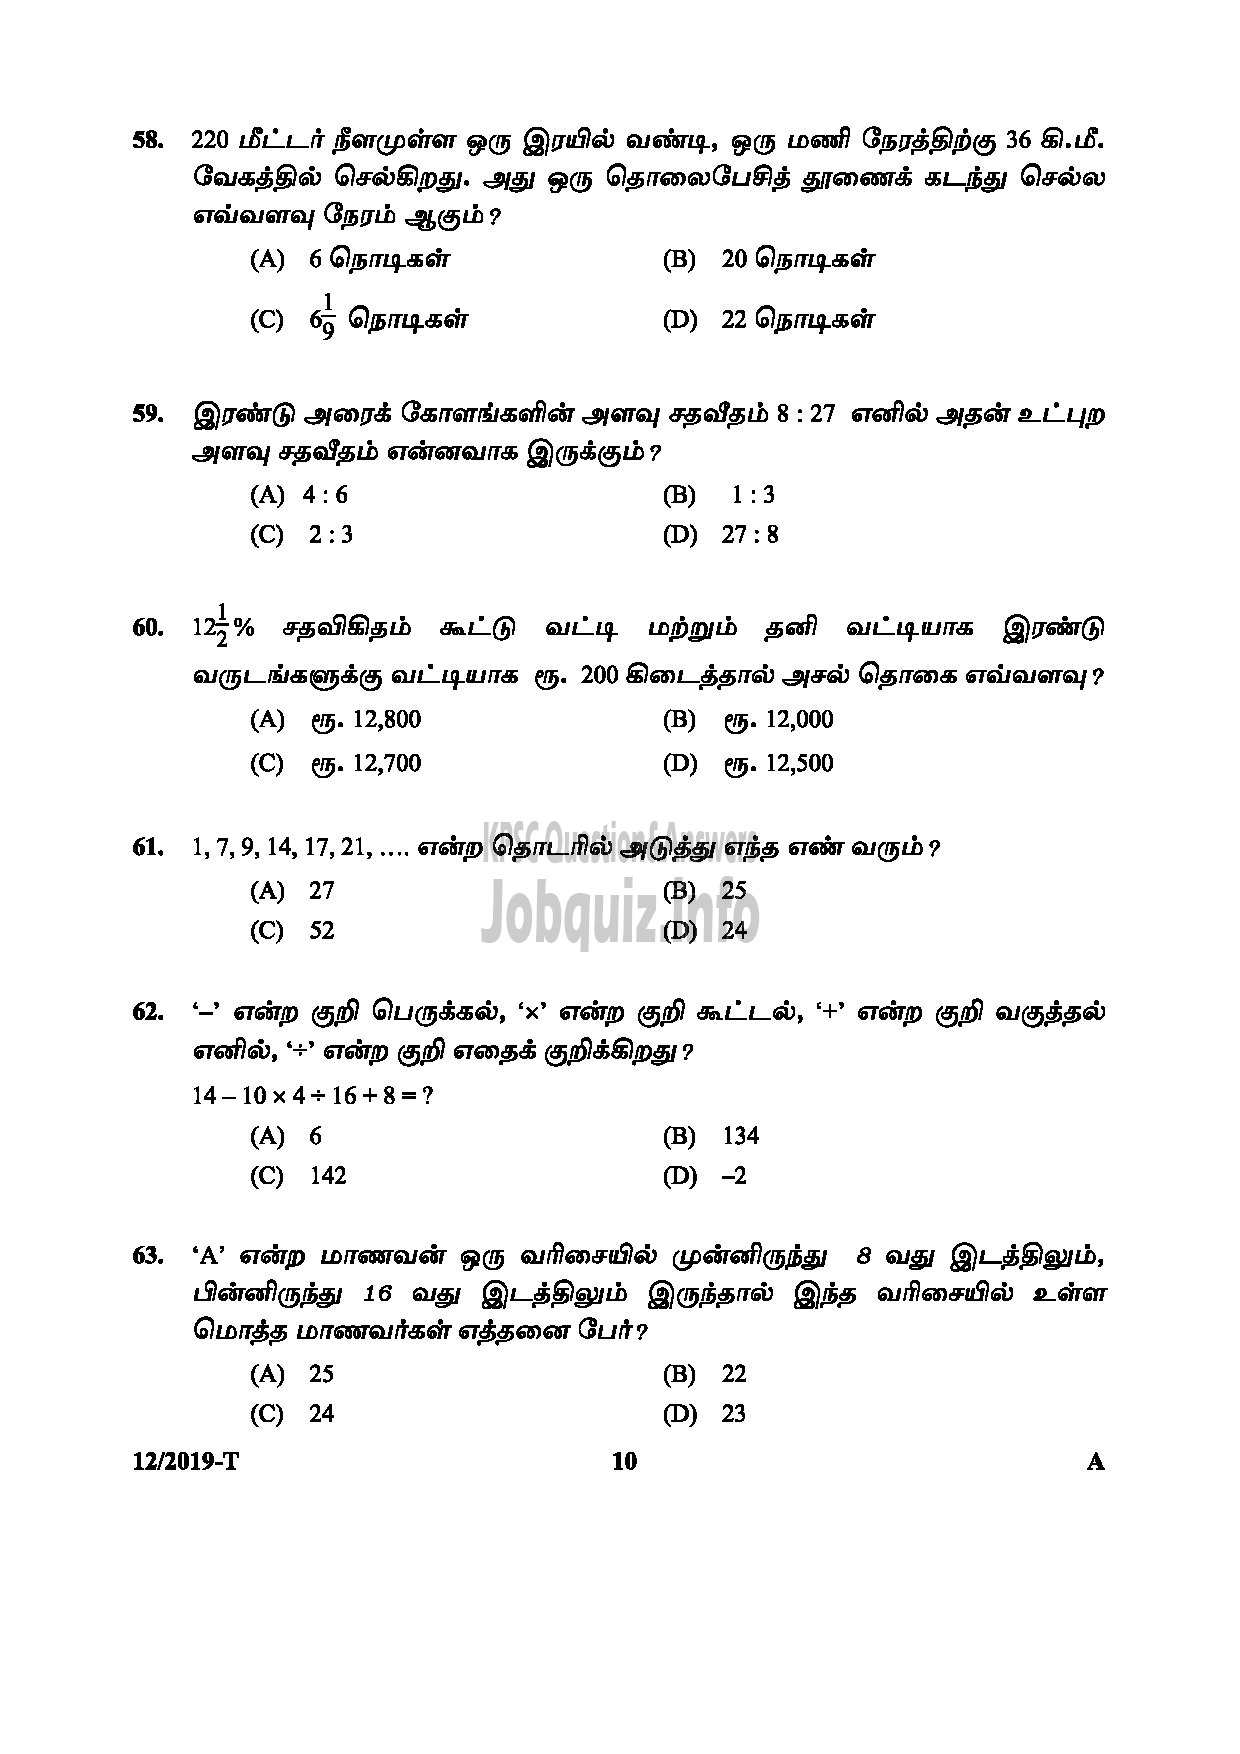 Kerala PSC Question Paper - L D CLERK ASSISTANT GR II KERALA KHADI VILLAGE INDUSTRIES BOARD NCC SAINIK WELFARE Tamil -10